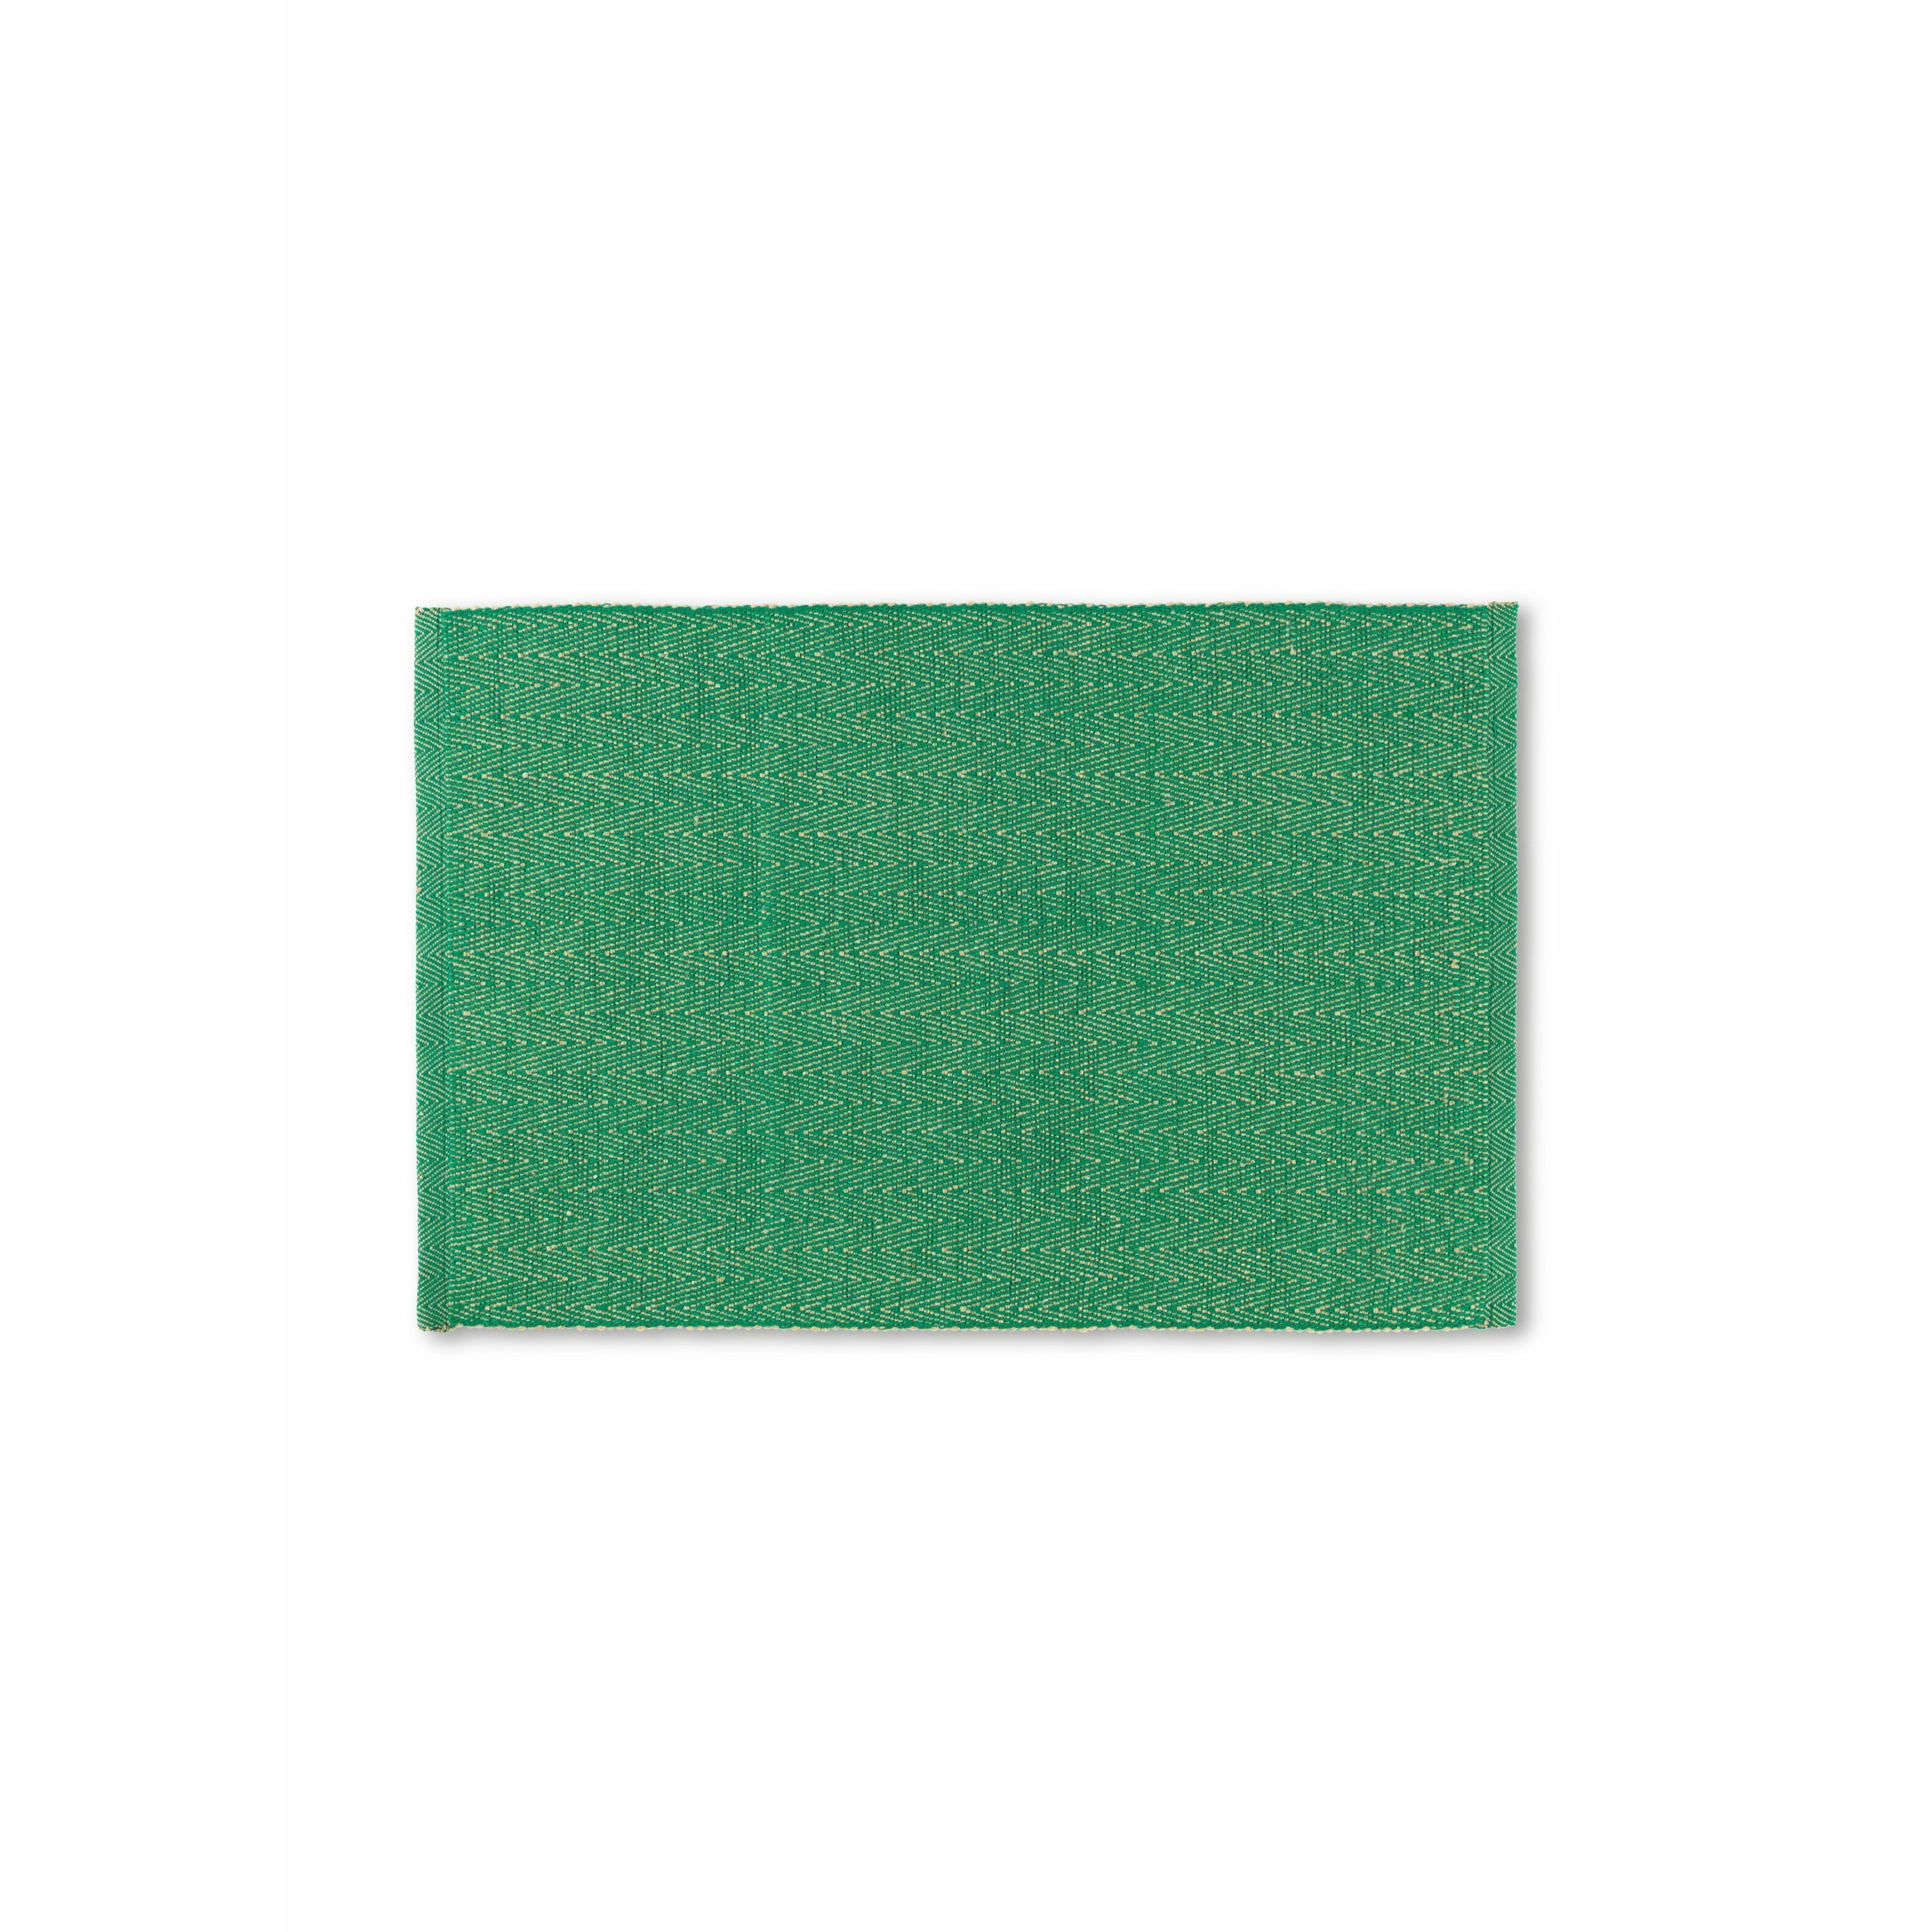 Lyngby Porcelæn Fischgräten -Placemat 43x30 cm, grün